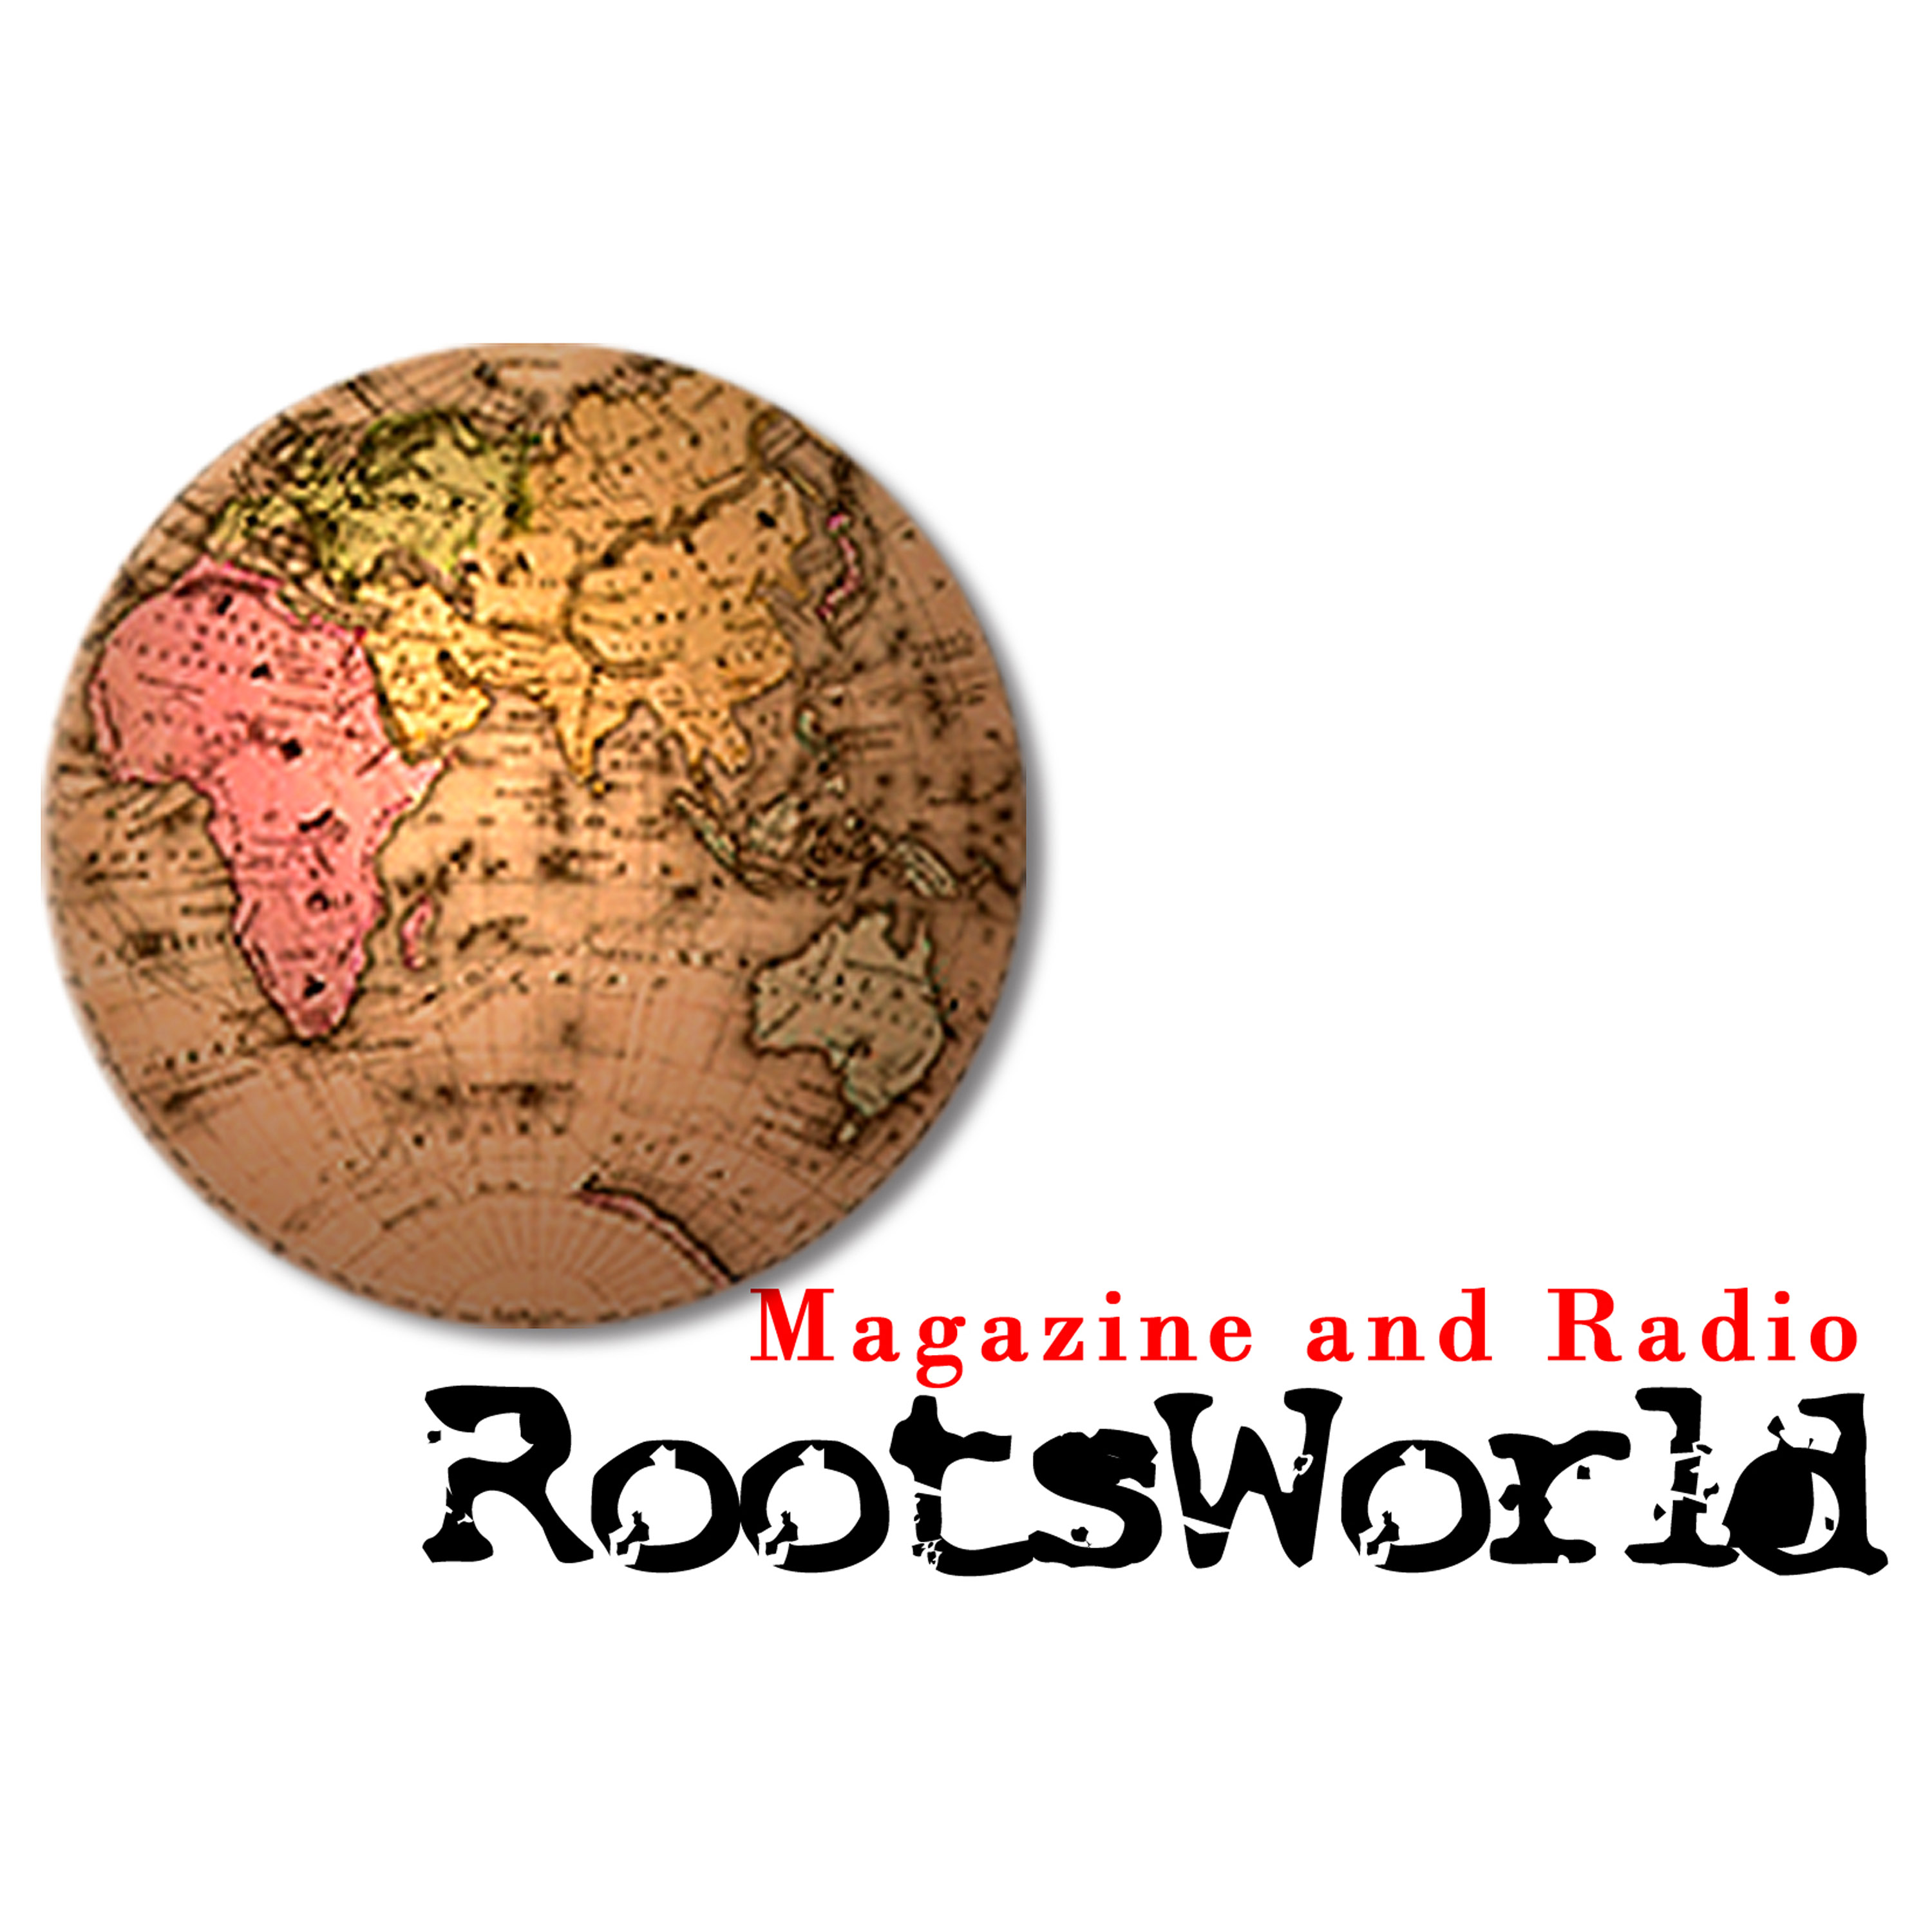 Artwork for podcast RootsWorld Radio